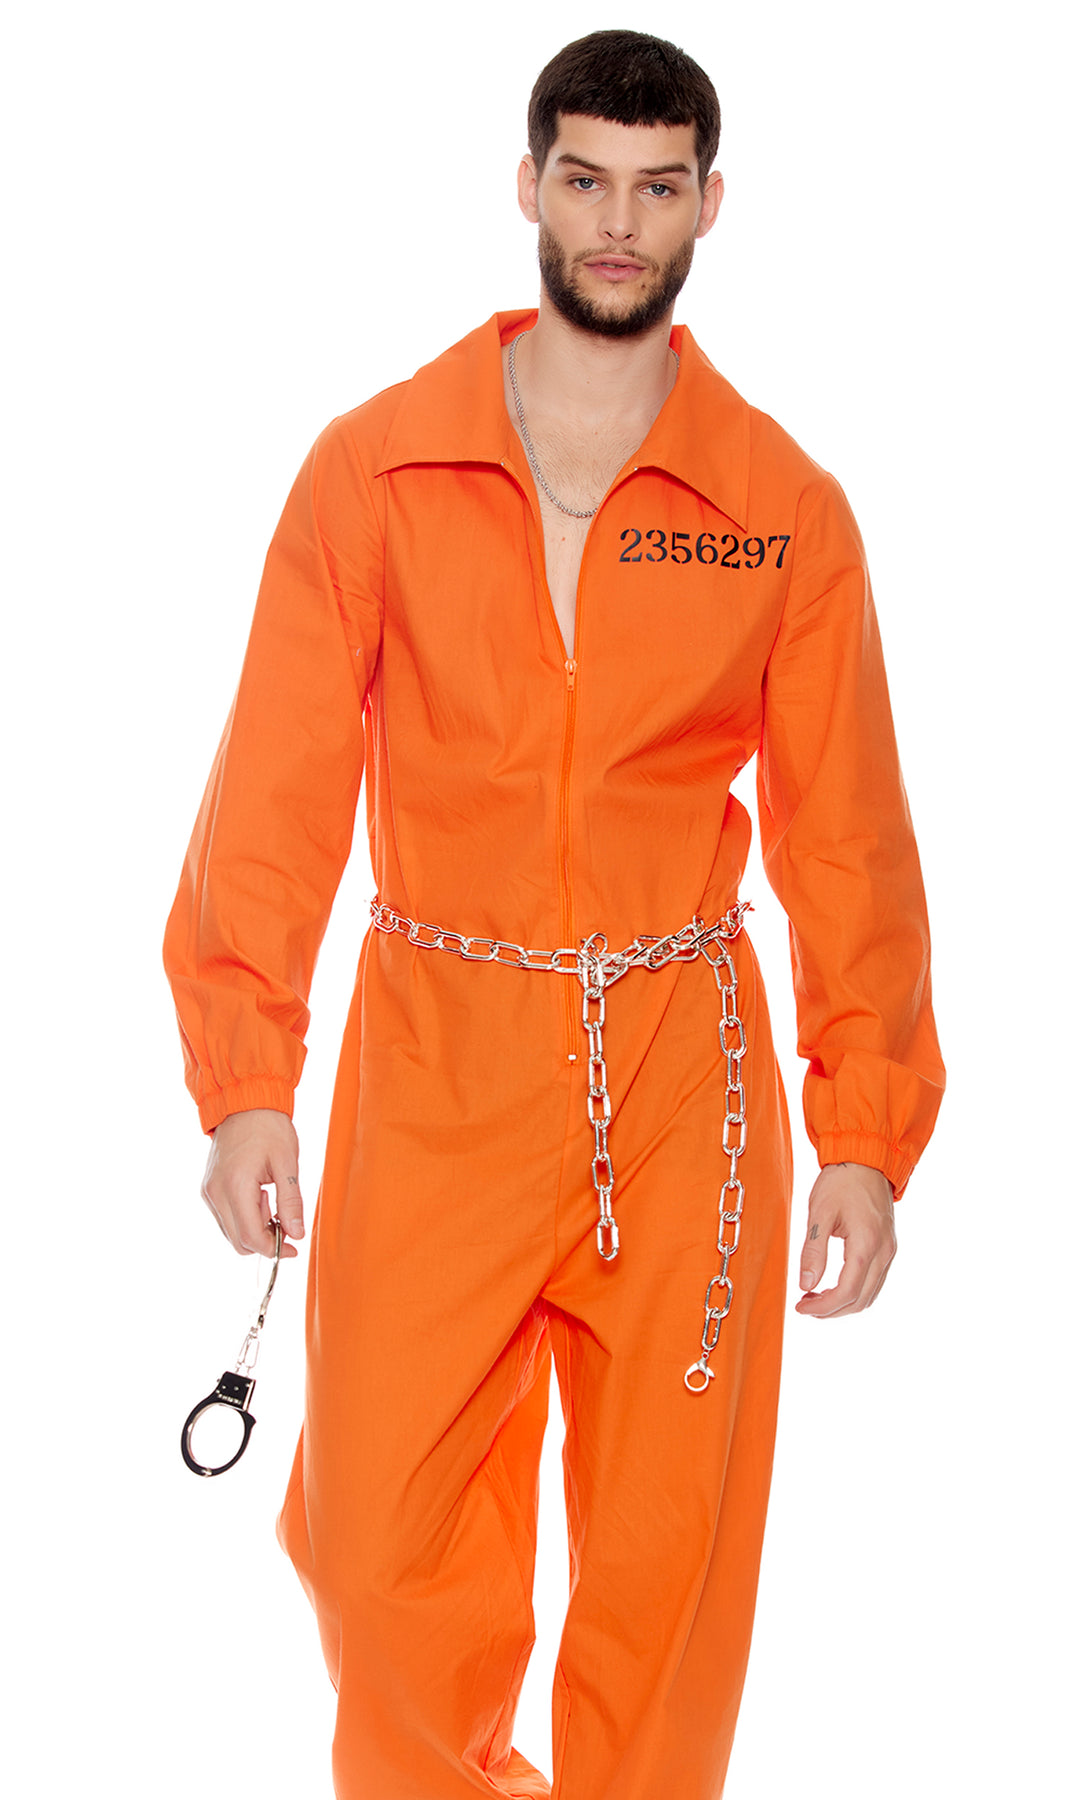 Lock it Down Men's Inmate Costume